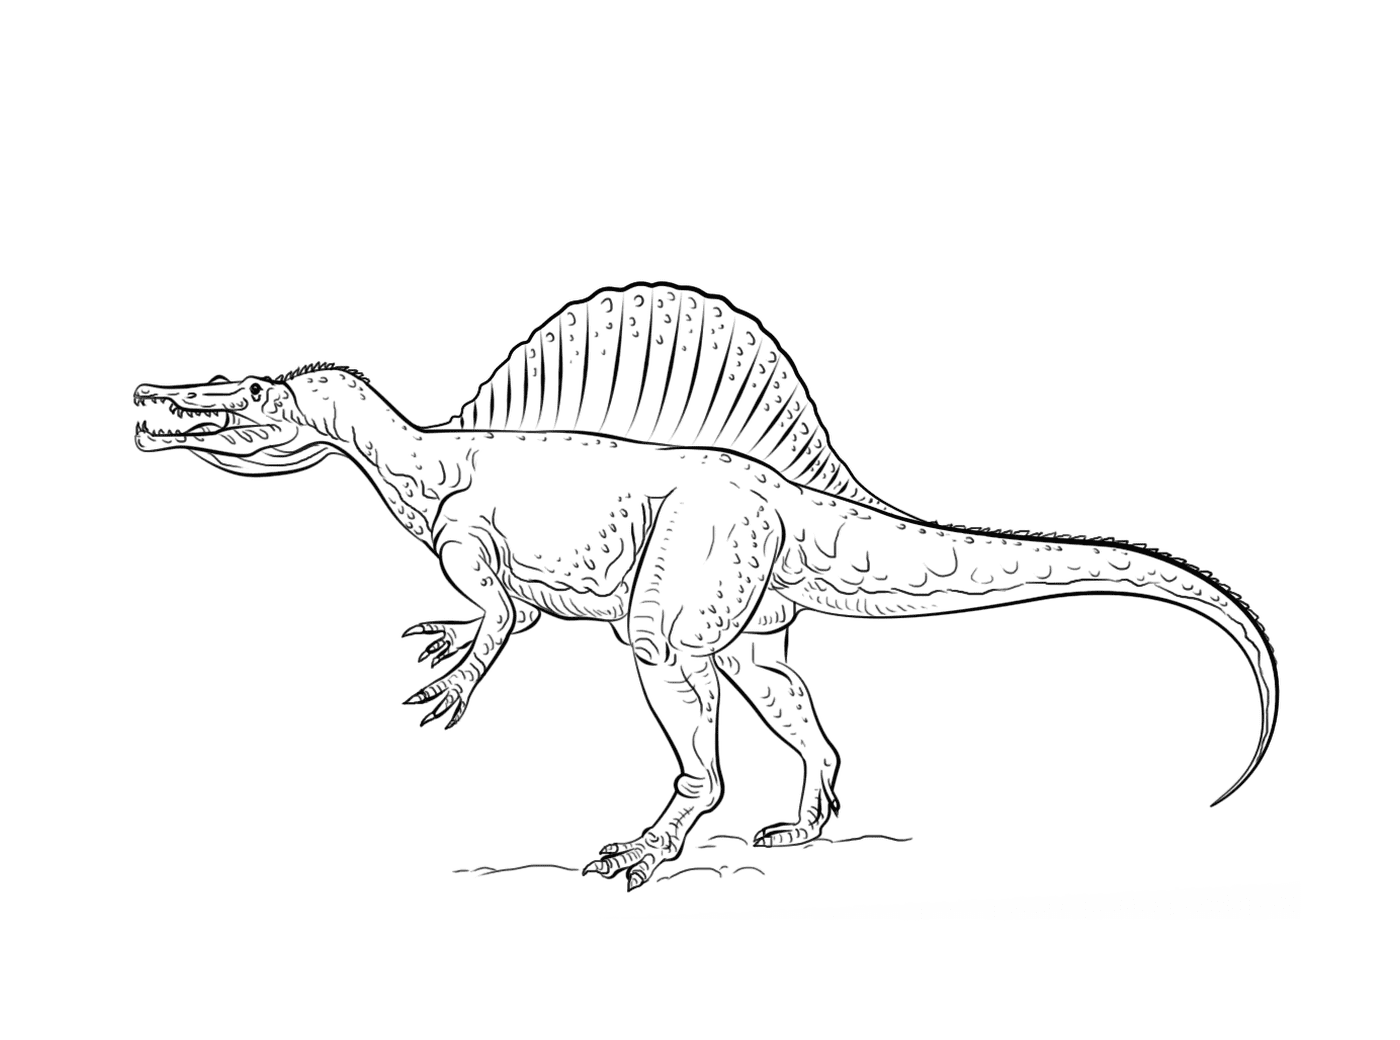  Spinosaurus, ein beeindruckender Dinosaurier 